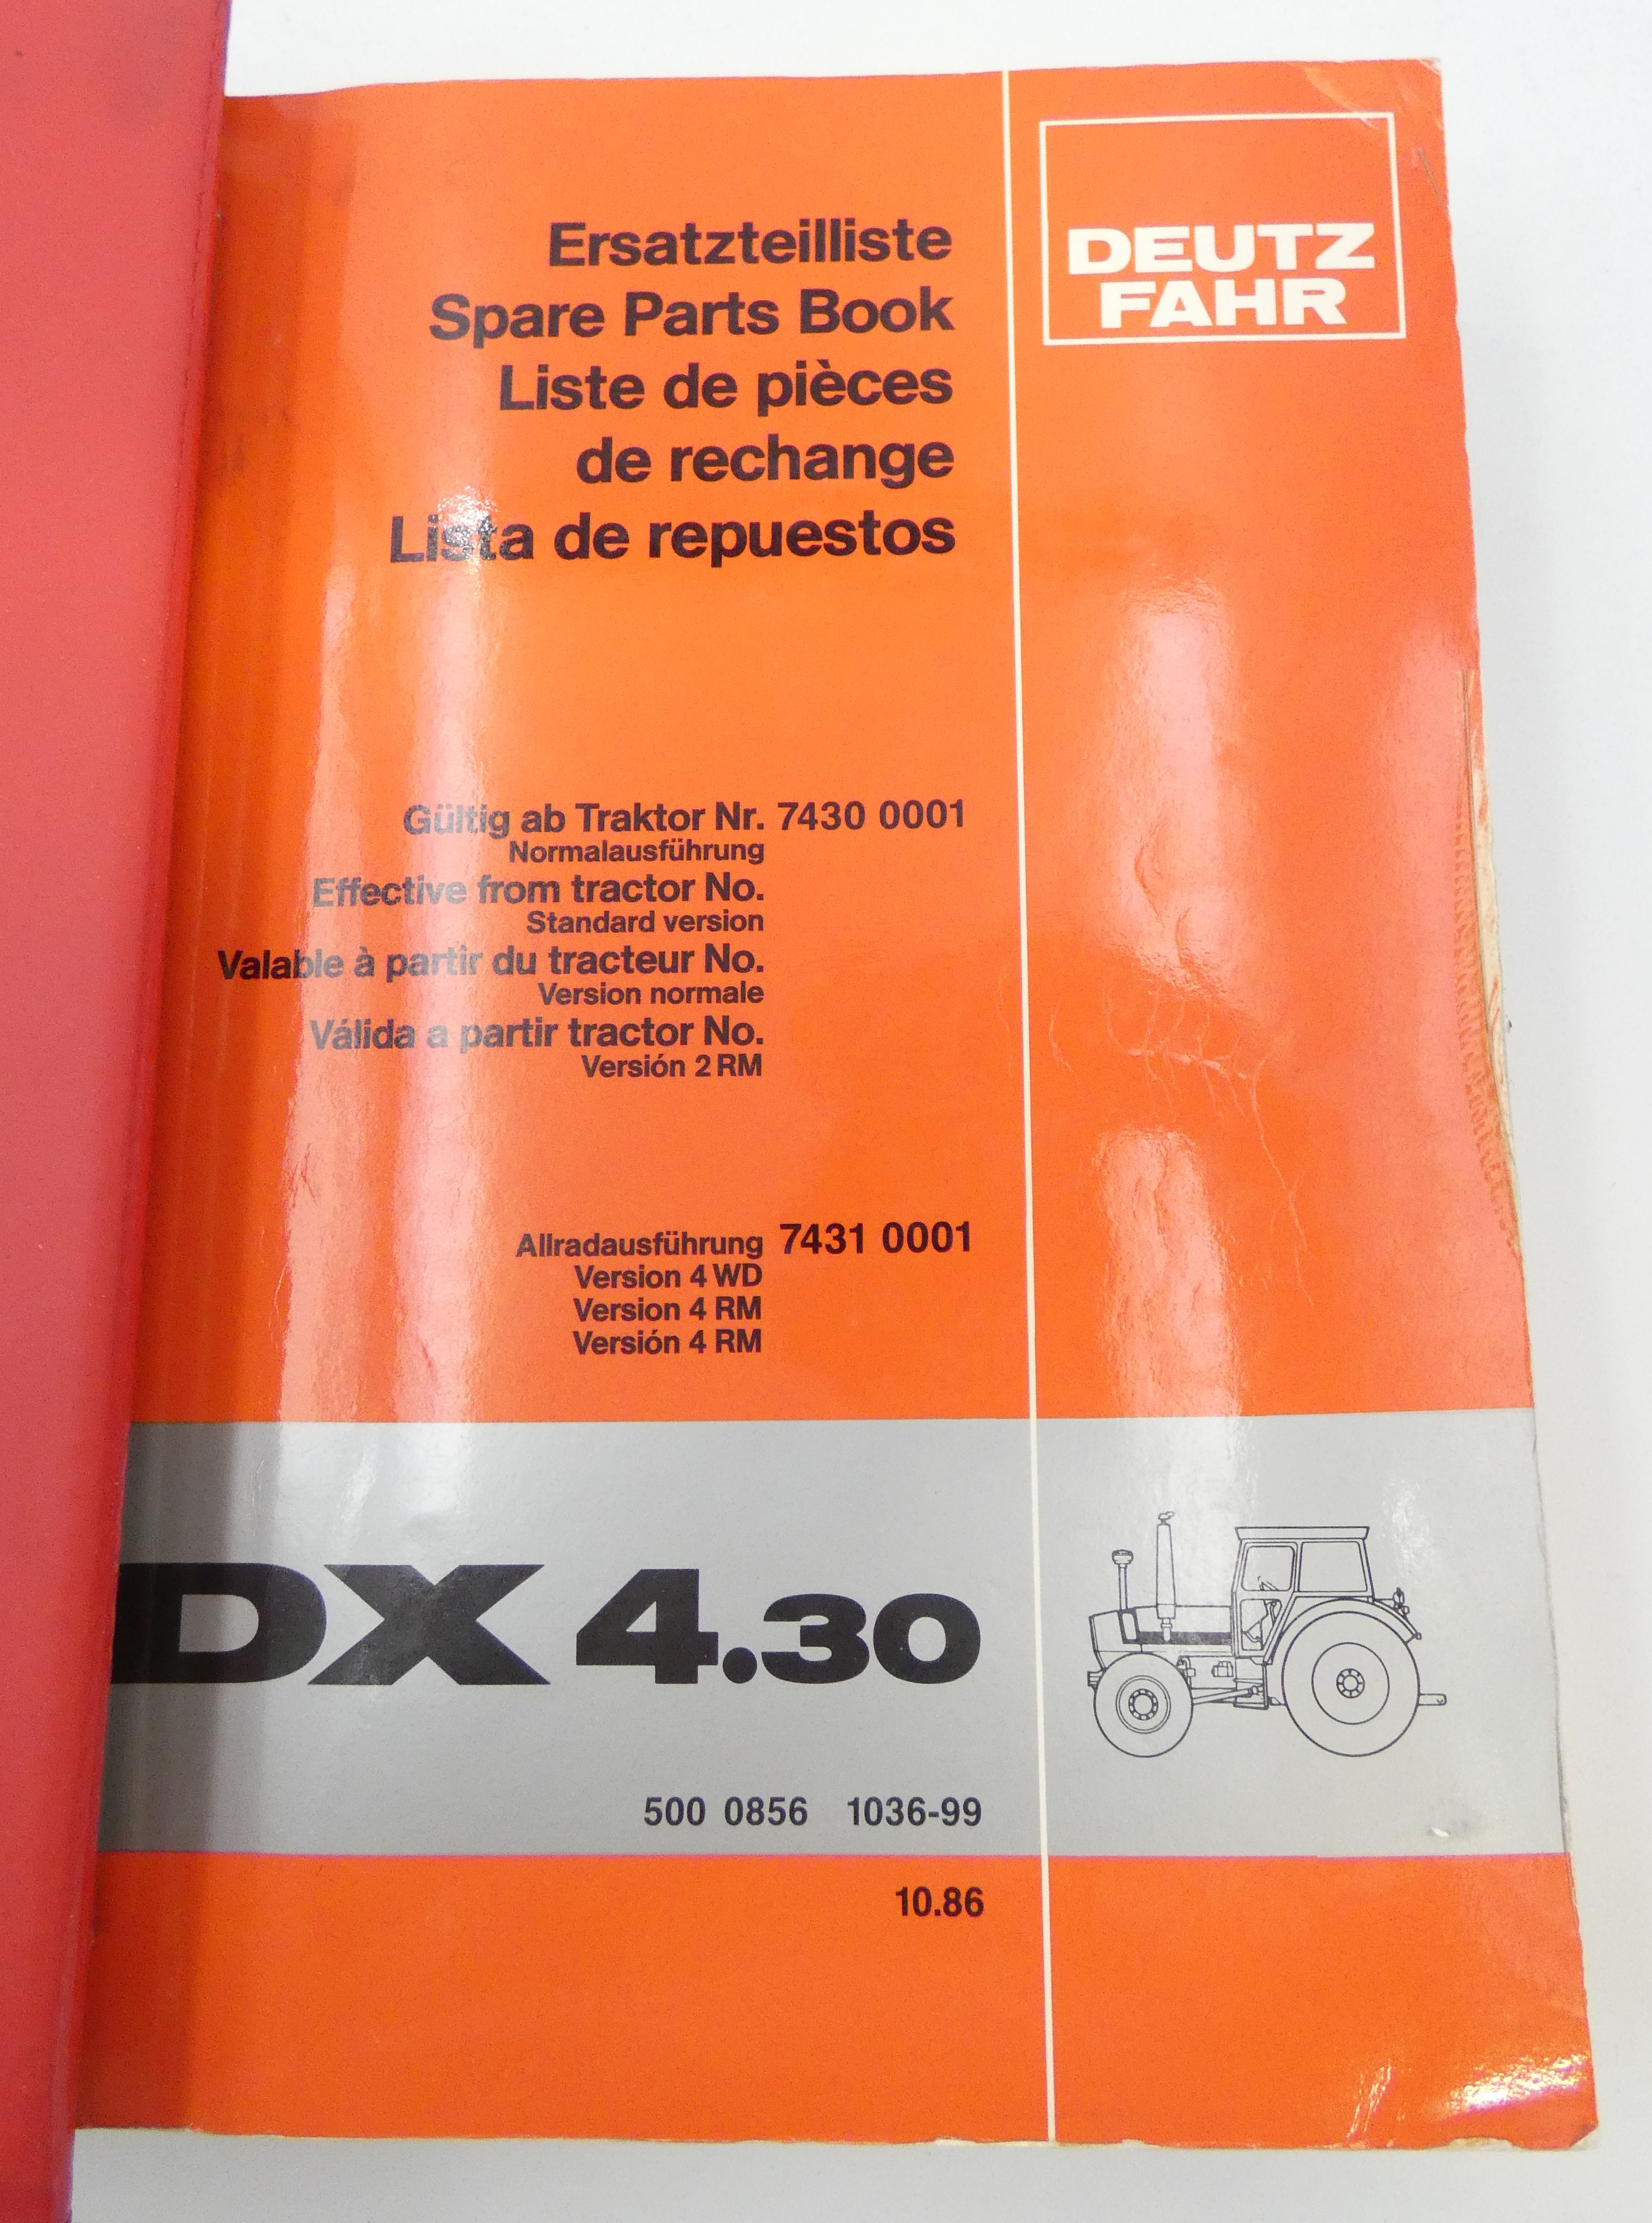 Deutz-Fahr DX4.30, DX4.70 spare parts book